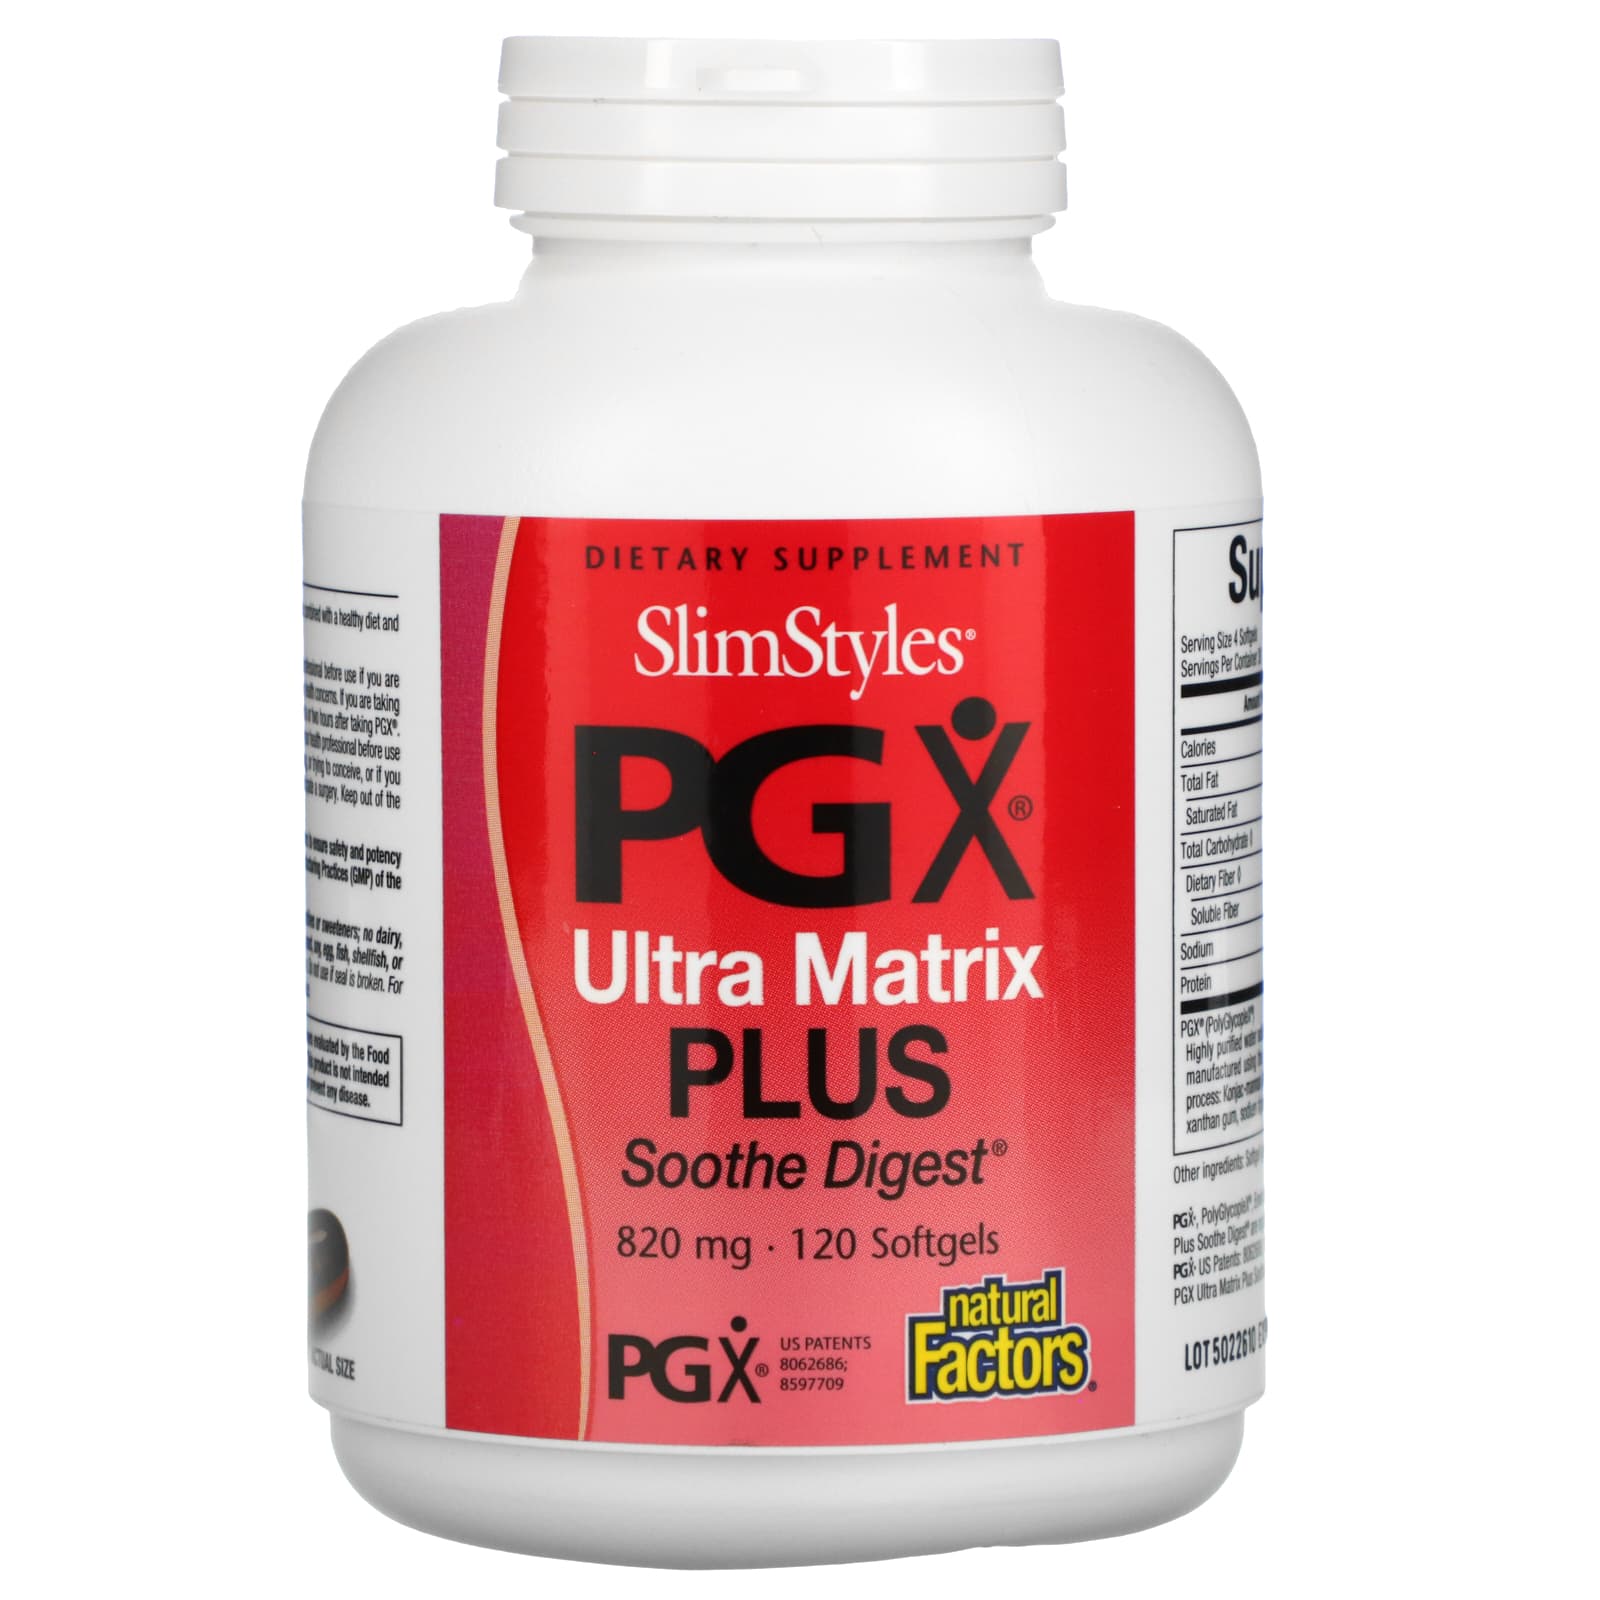 Natural Factors Slimstyles PGX Ultra Matrix Plus Soothe Digest, 820 Mg, Softgels